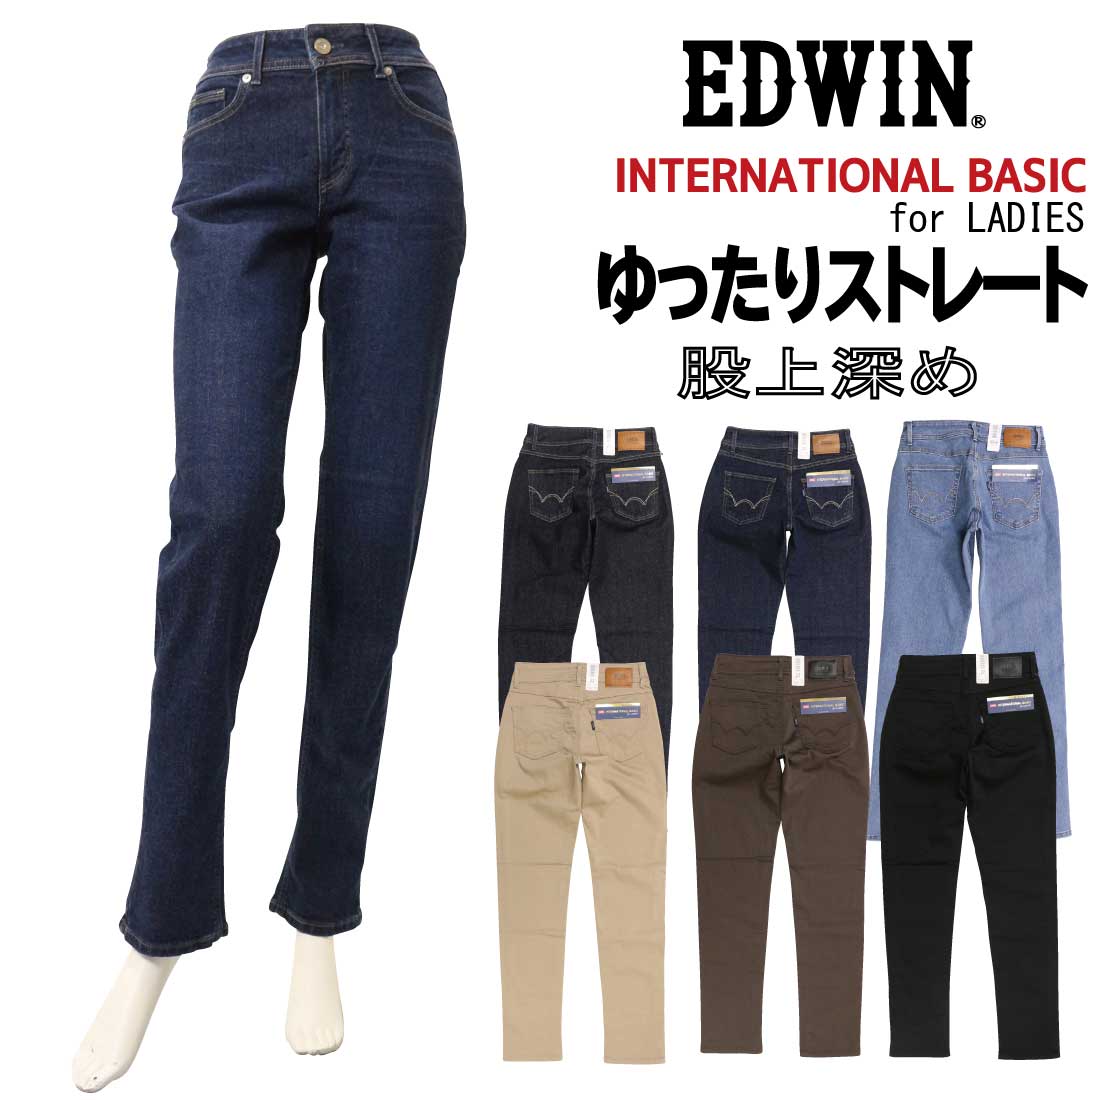 EDWIN エドウィン レディース 股上深め ゆったり ストレート ME403 ストレッチ ジーンズ デニム カジュアル 100 126 116  168 175 156 :edl-me403:jeans藍や 通販 